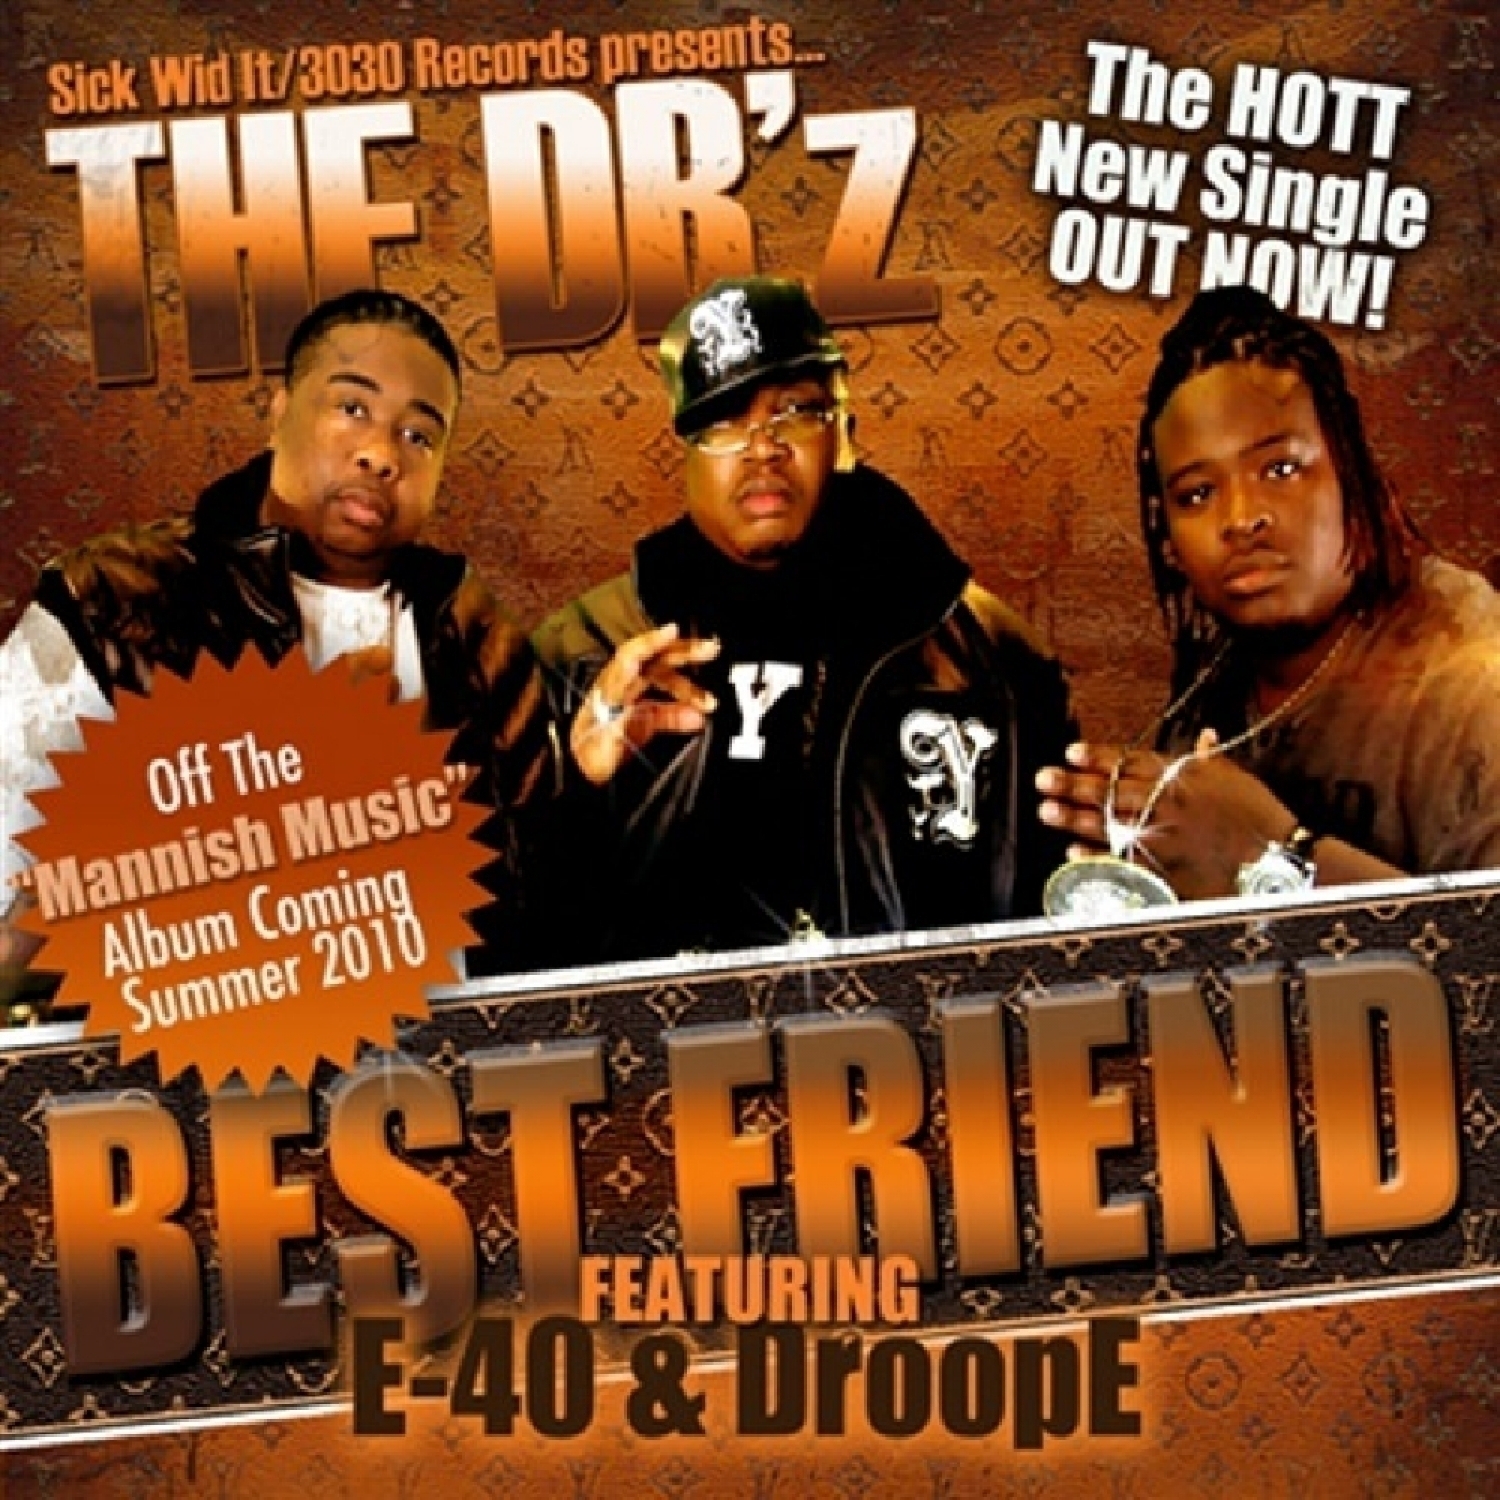 Best Friend (feat. E-40 & DroopE) - Single